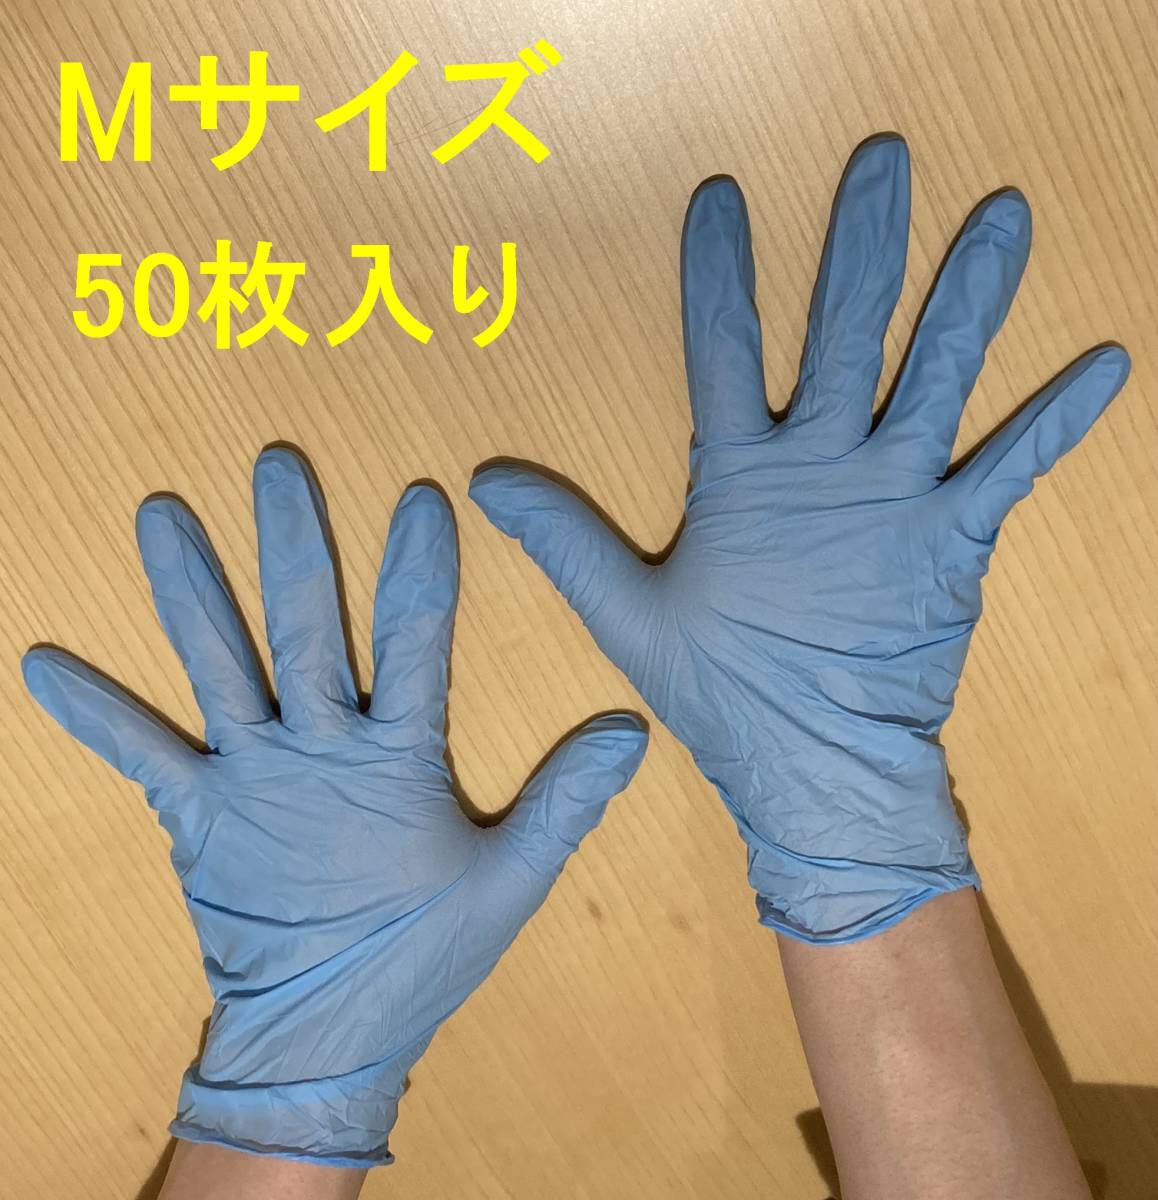 ニトリル手袋 Mサイズ 50枚 使い捨て手袋 パウダーフリー 粉なし